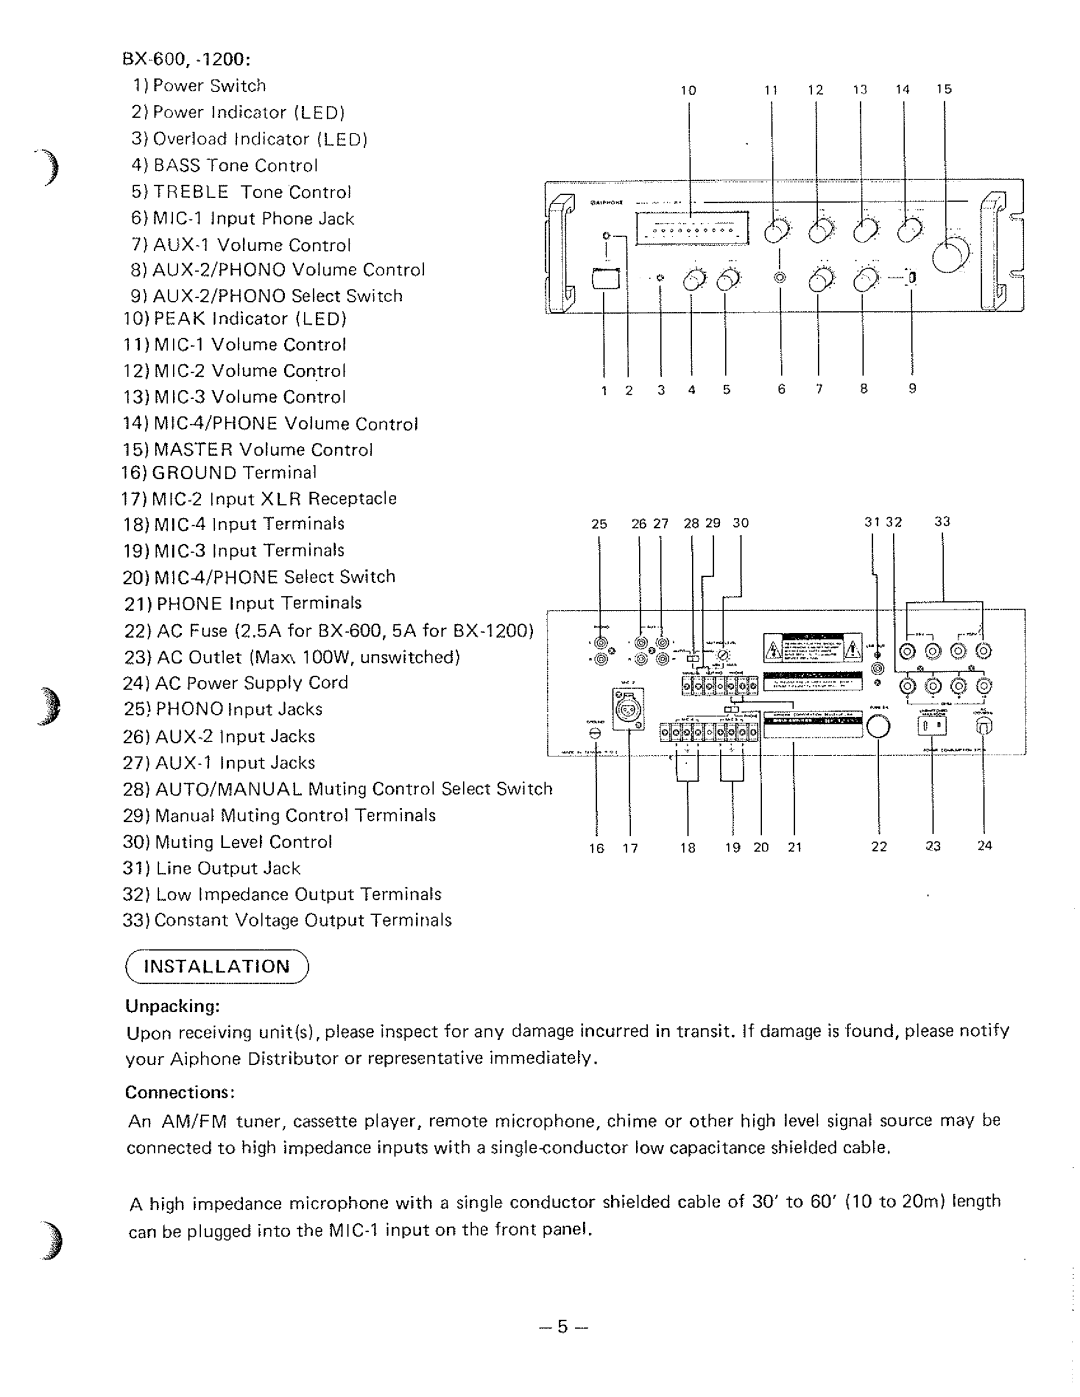 Aiphone BX-600, BX-300, BX-1200 manual 